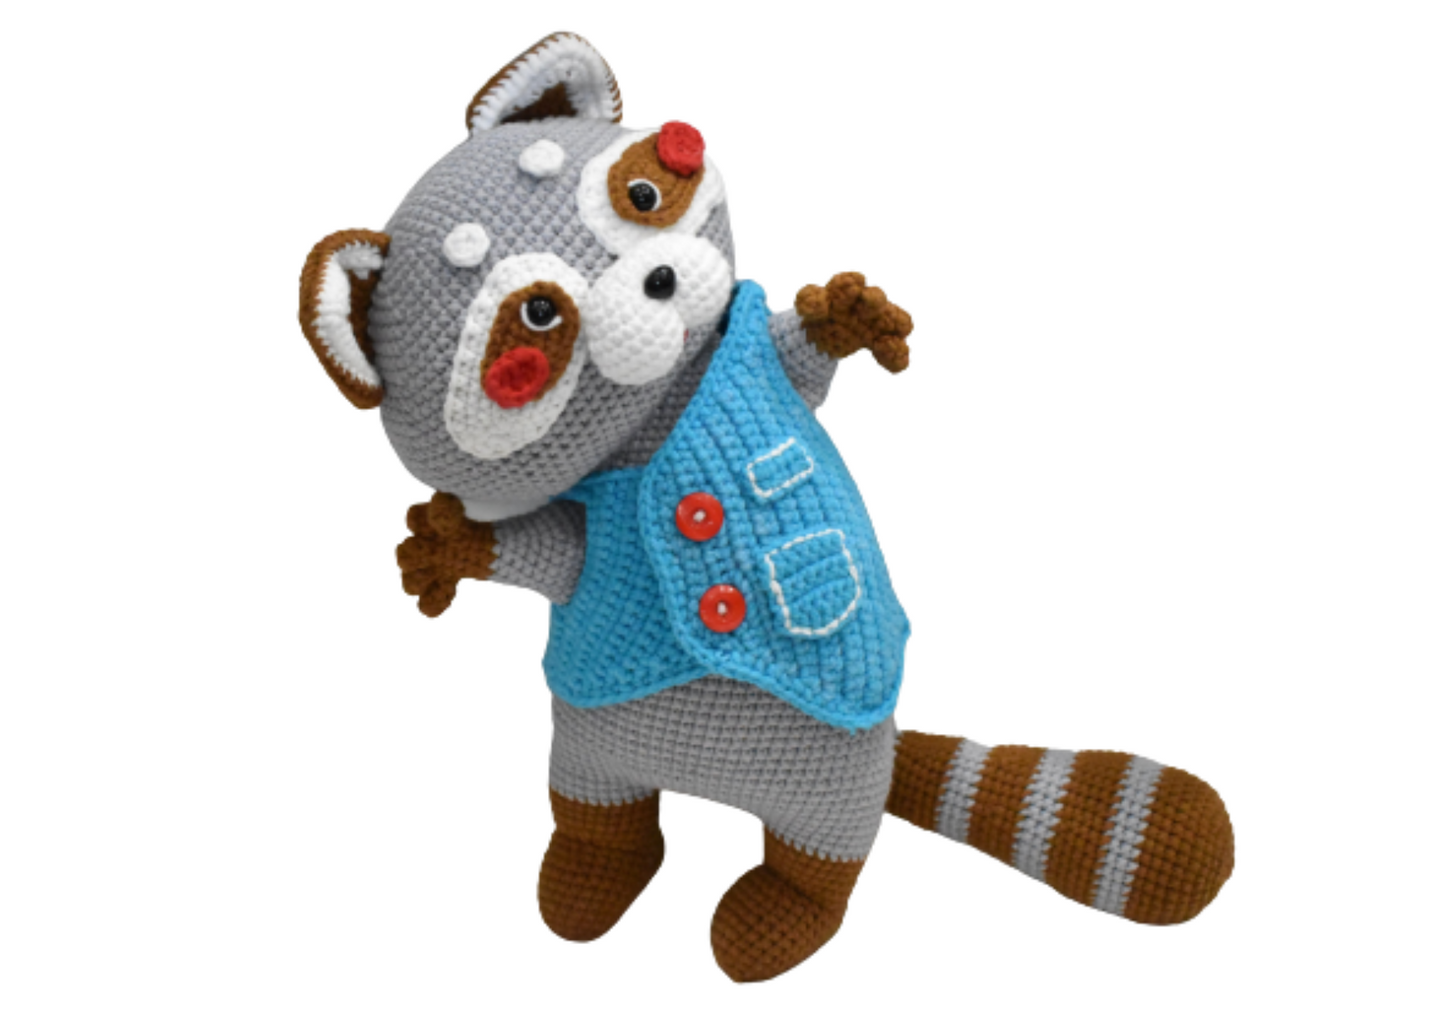 Cute Grey Weasel Handmade Amigurumi Stuffed Toy Knit Crochet Doll VAC